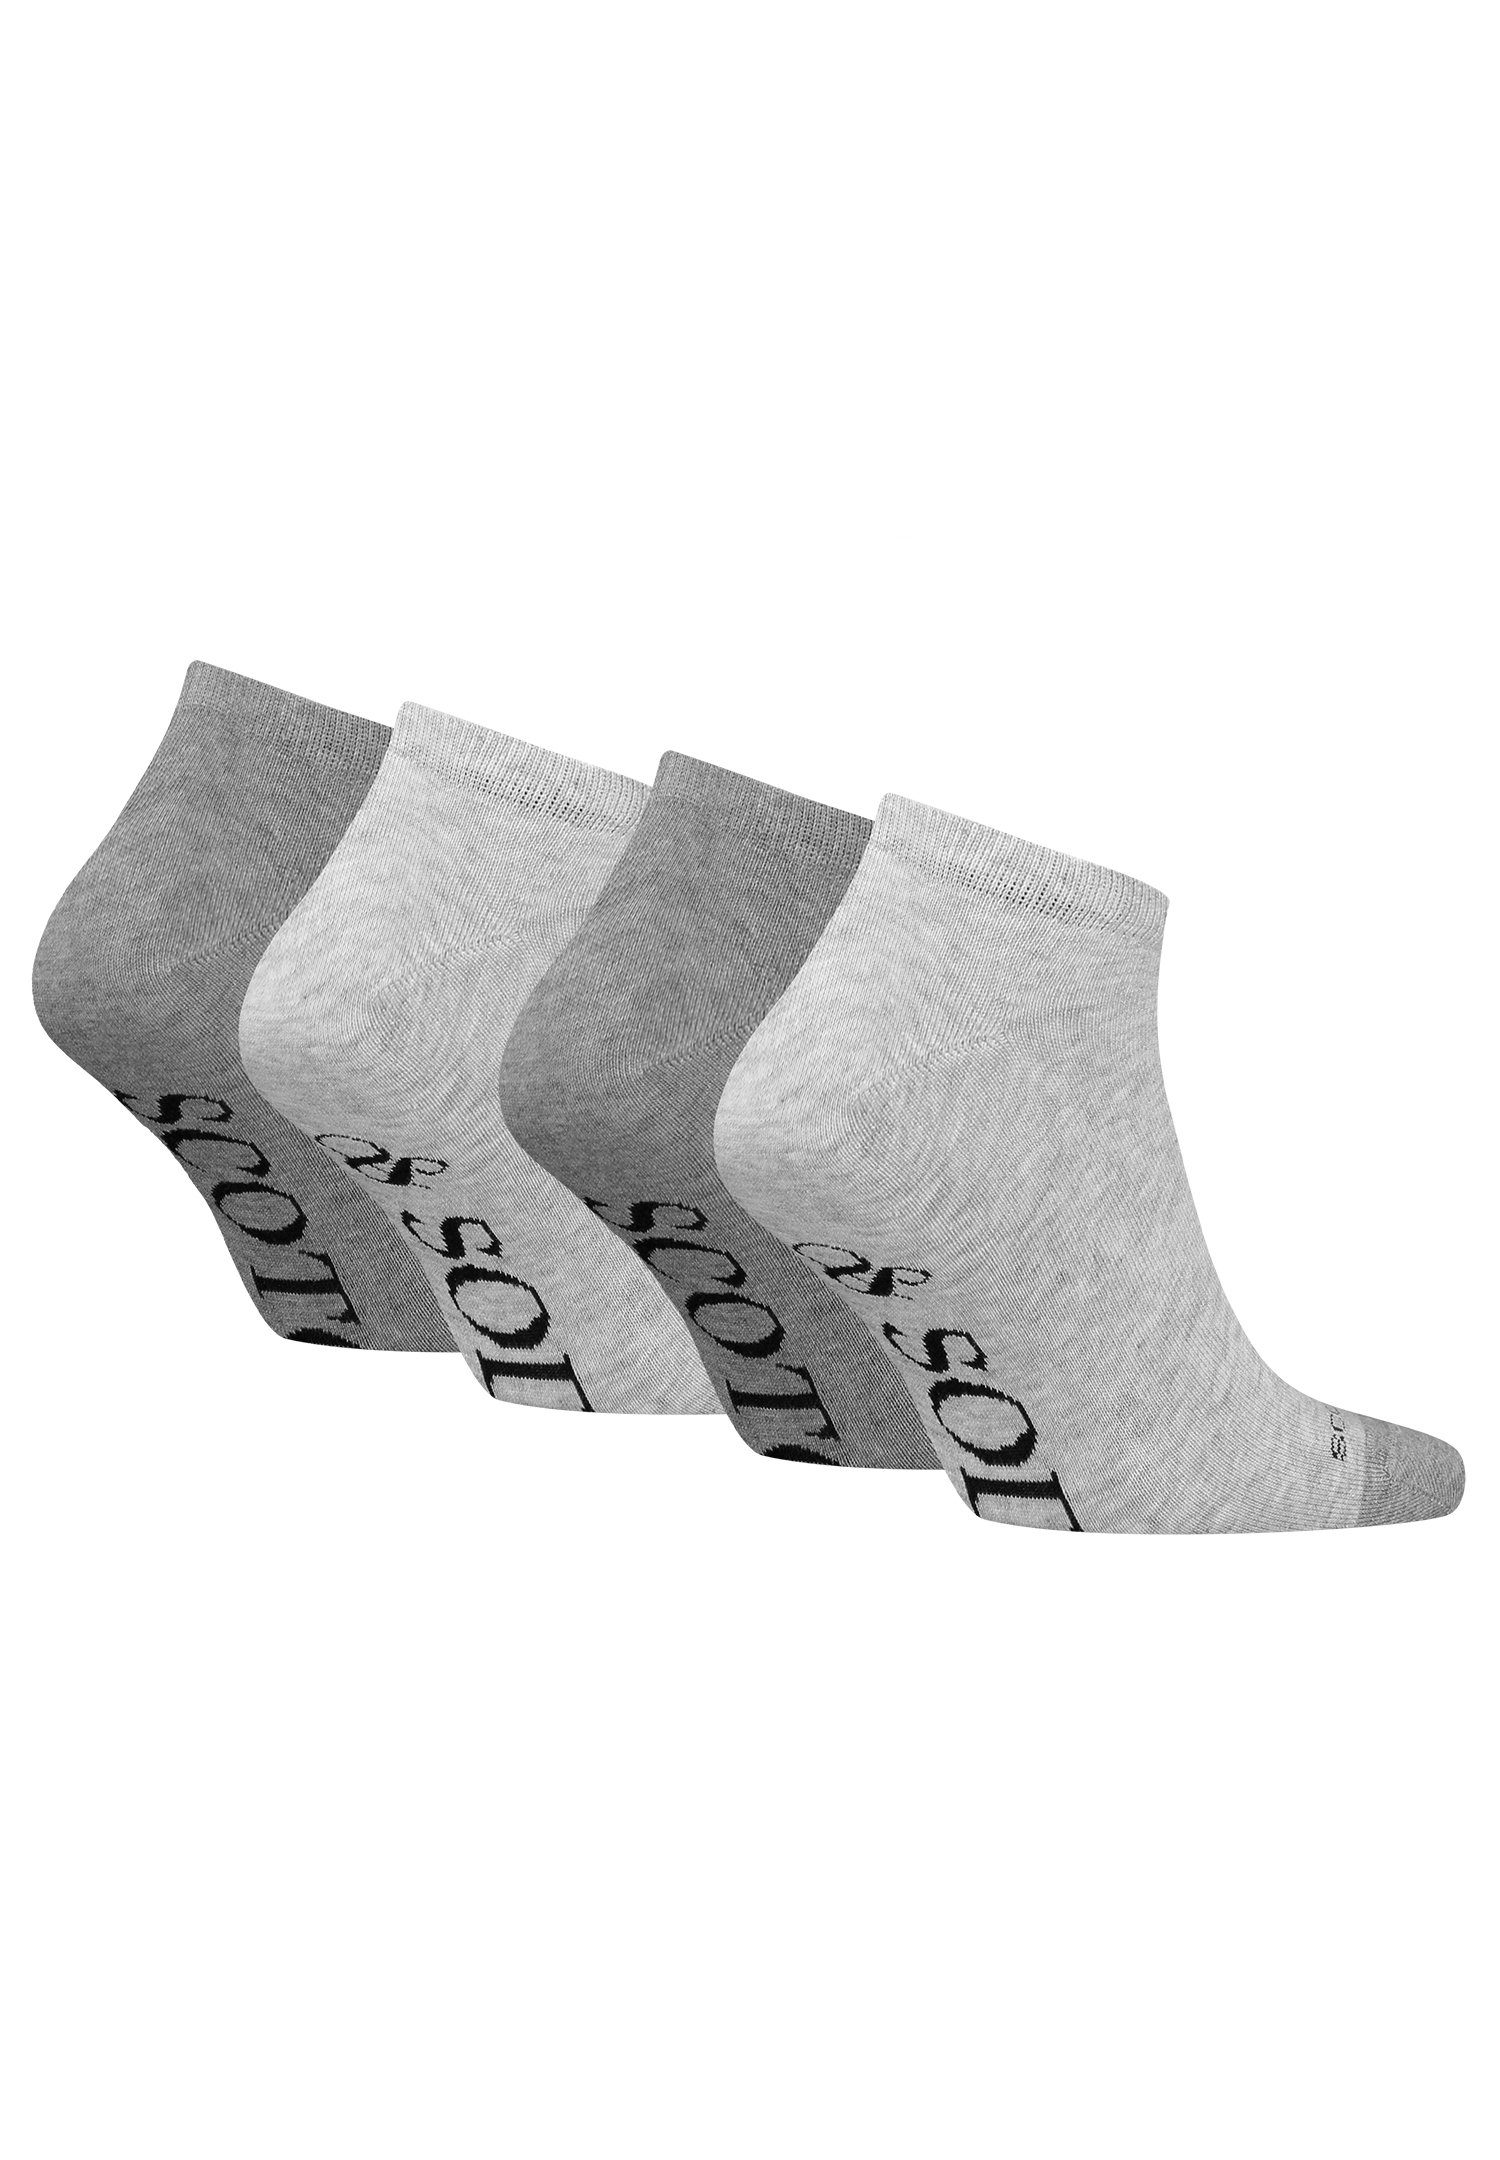 & Dip Kurzsocken Scotch SCSO Heather Soda Grey Socks Sneaker Toe (4-Paar) 4P